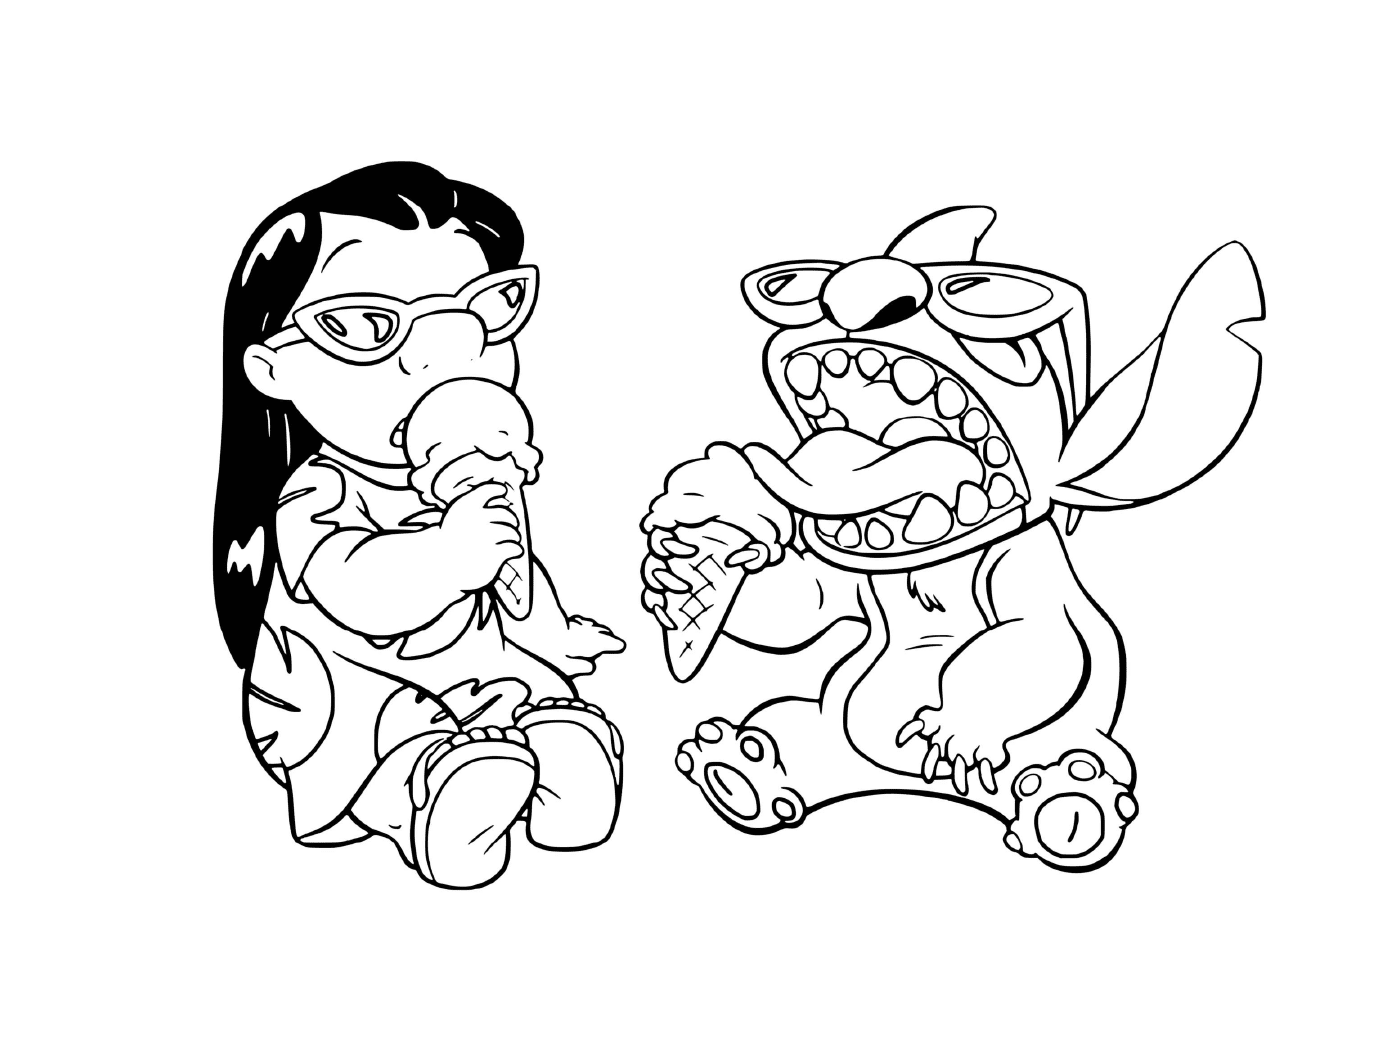  Stitch e Lilo mangiano ghiaccio 